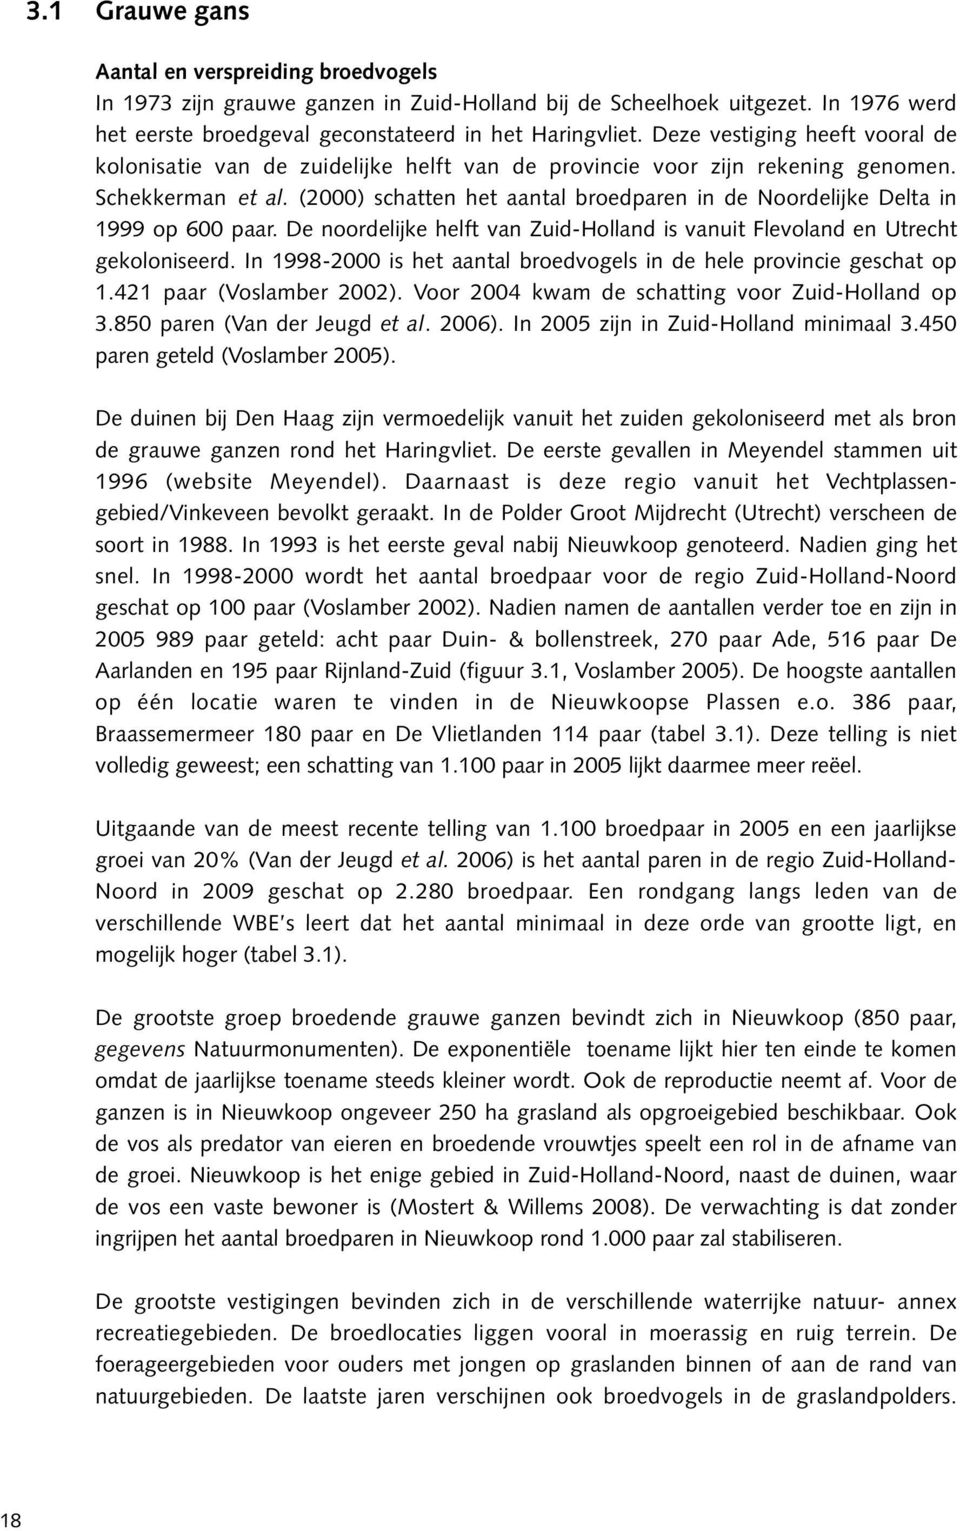 (2000) schatten het aantal broedparen in de Noordelijke Delta in 1999 op 600 paar. De noordelijke helft van Zuid-Holland is vanuit Flevoland en Utrecht gekoloniseerd.